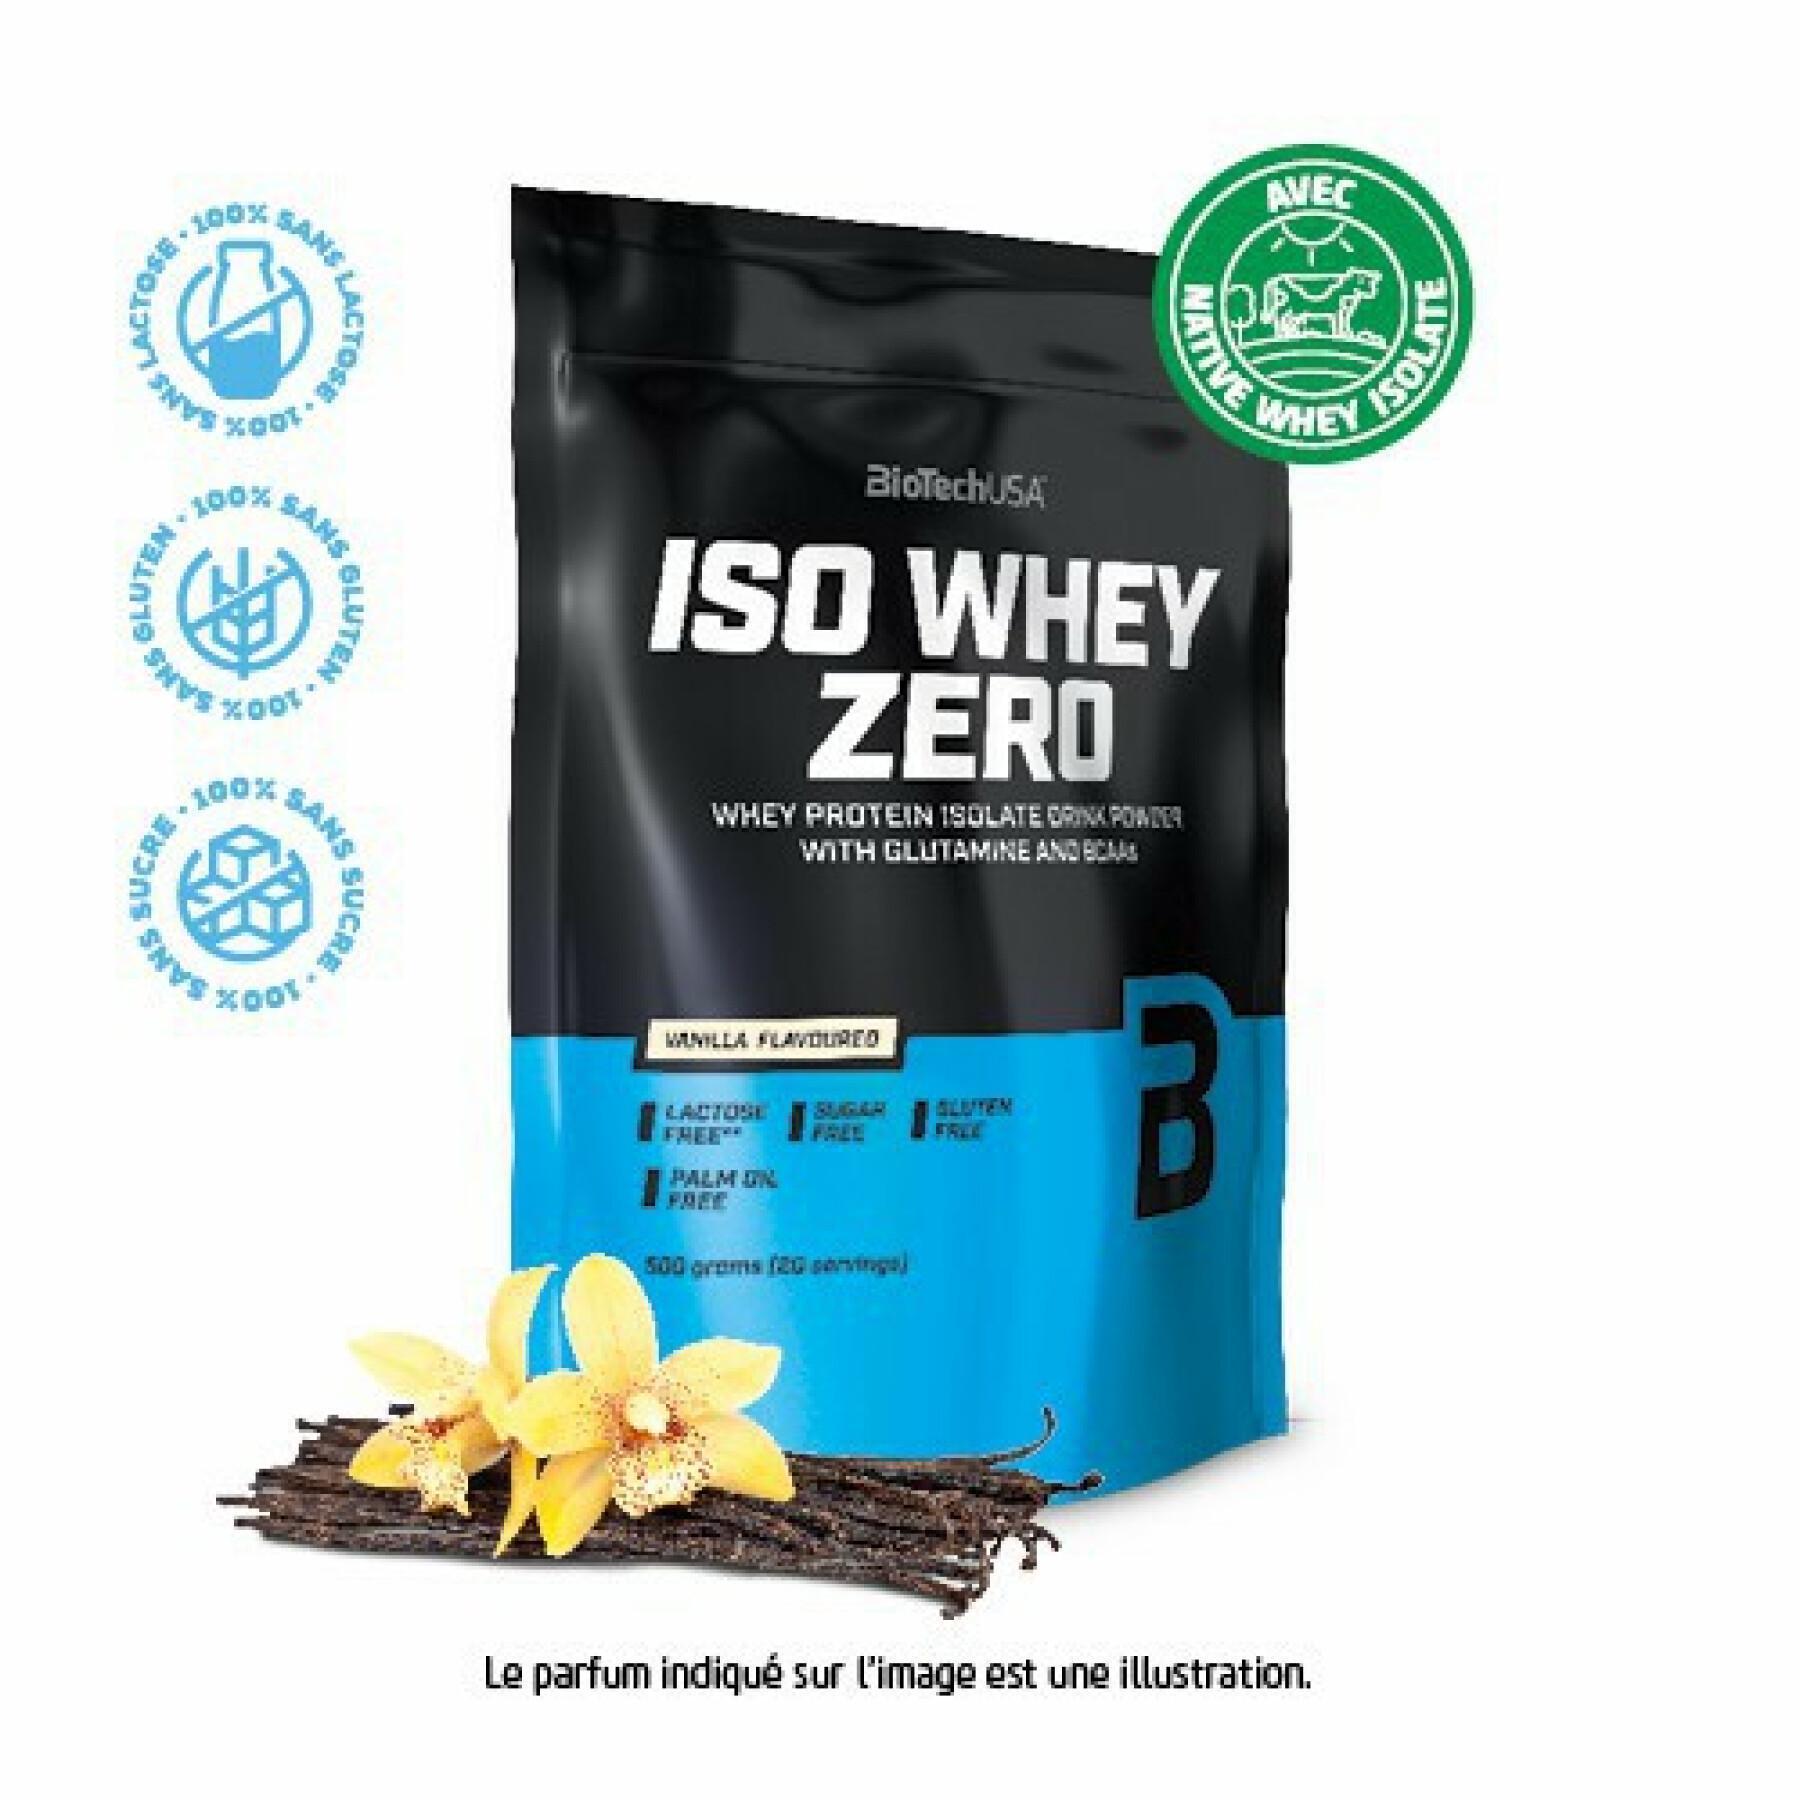 Paquete de 10 bolsas de proteínas Biotech USA iso whey zero lactose free - Vanille - 500g